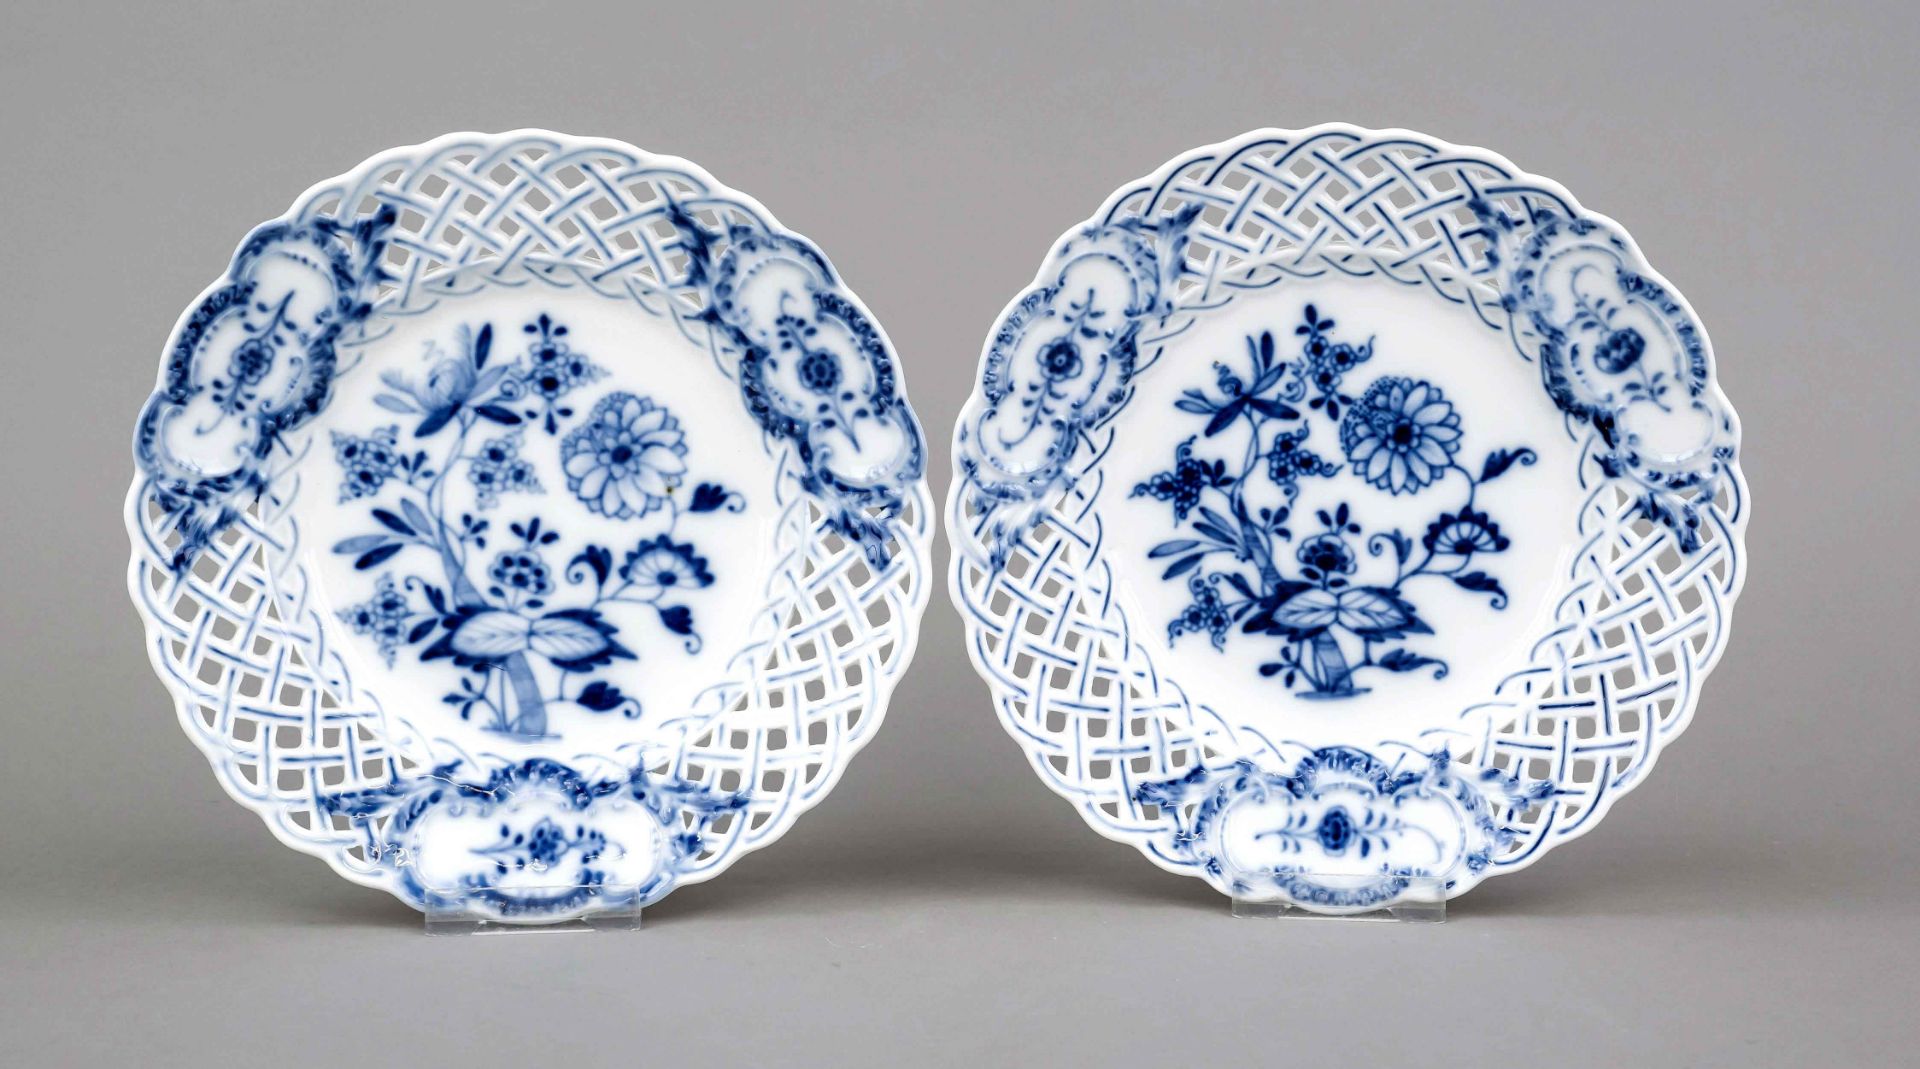 Two openwork plates, Meissen, Knauff Schweter, 1850-1886, 2nd choice, decor onion pattern in